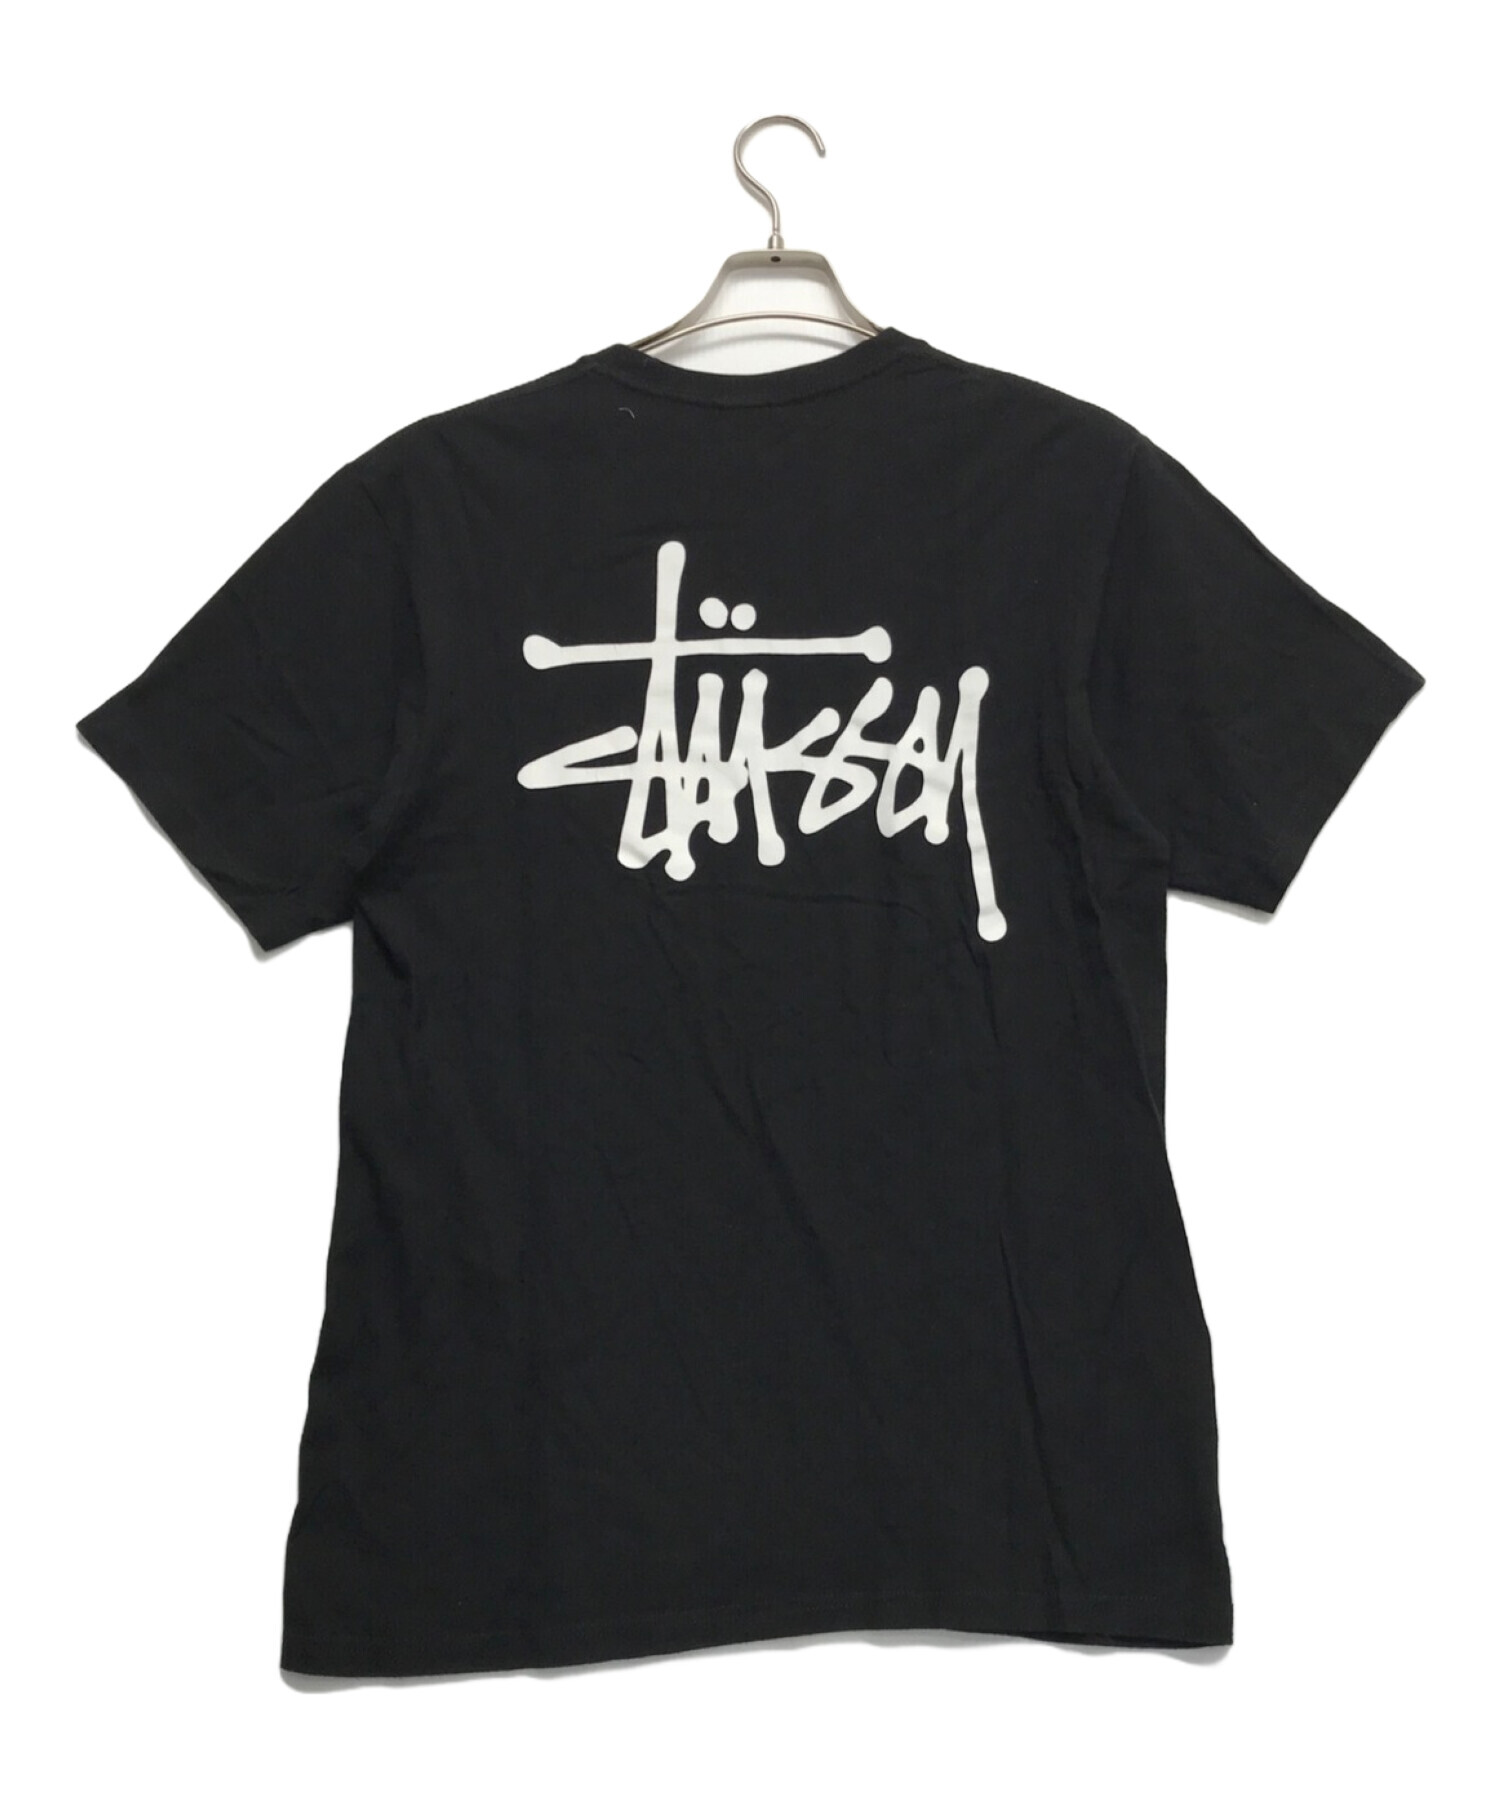 stussy (ステューシー) ロゴプリントTシャツ ブラック サイズ:M